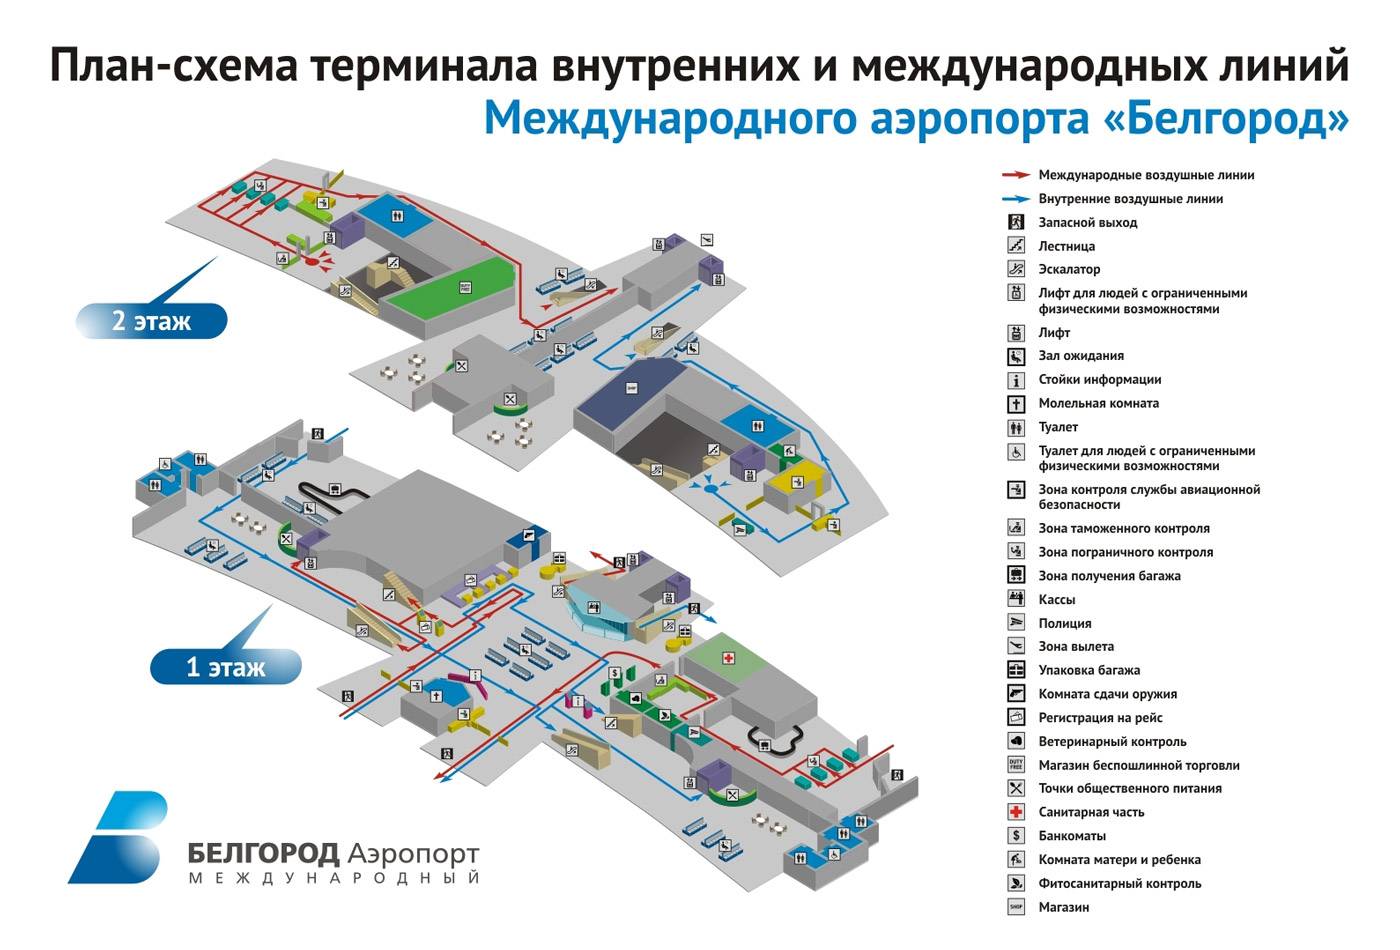 Международный аэропорт хабаровска (новый)